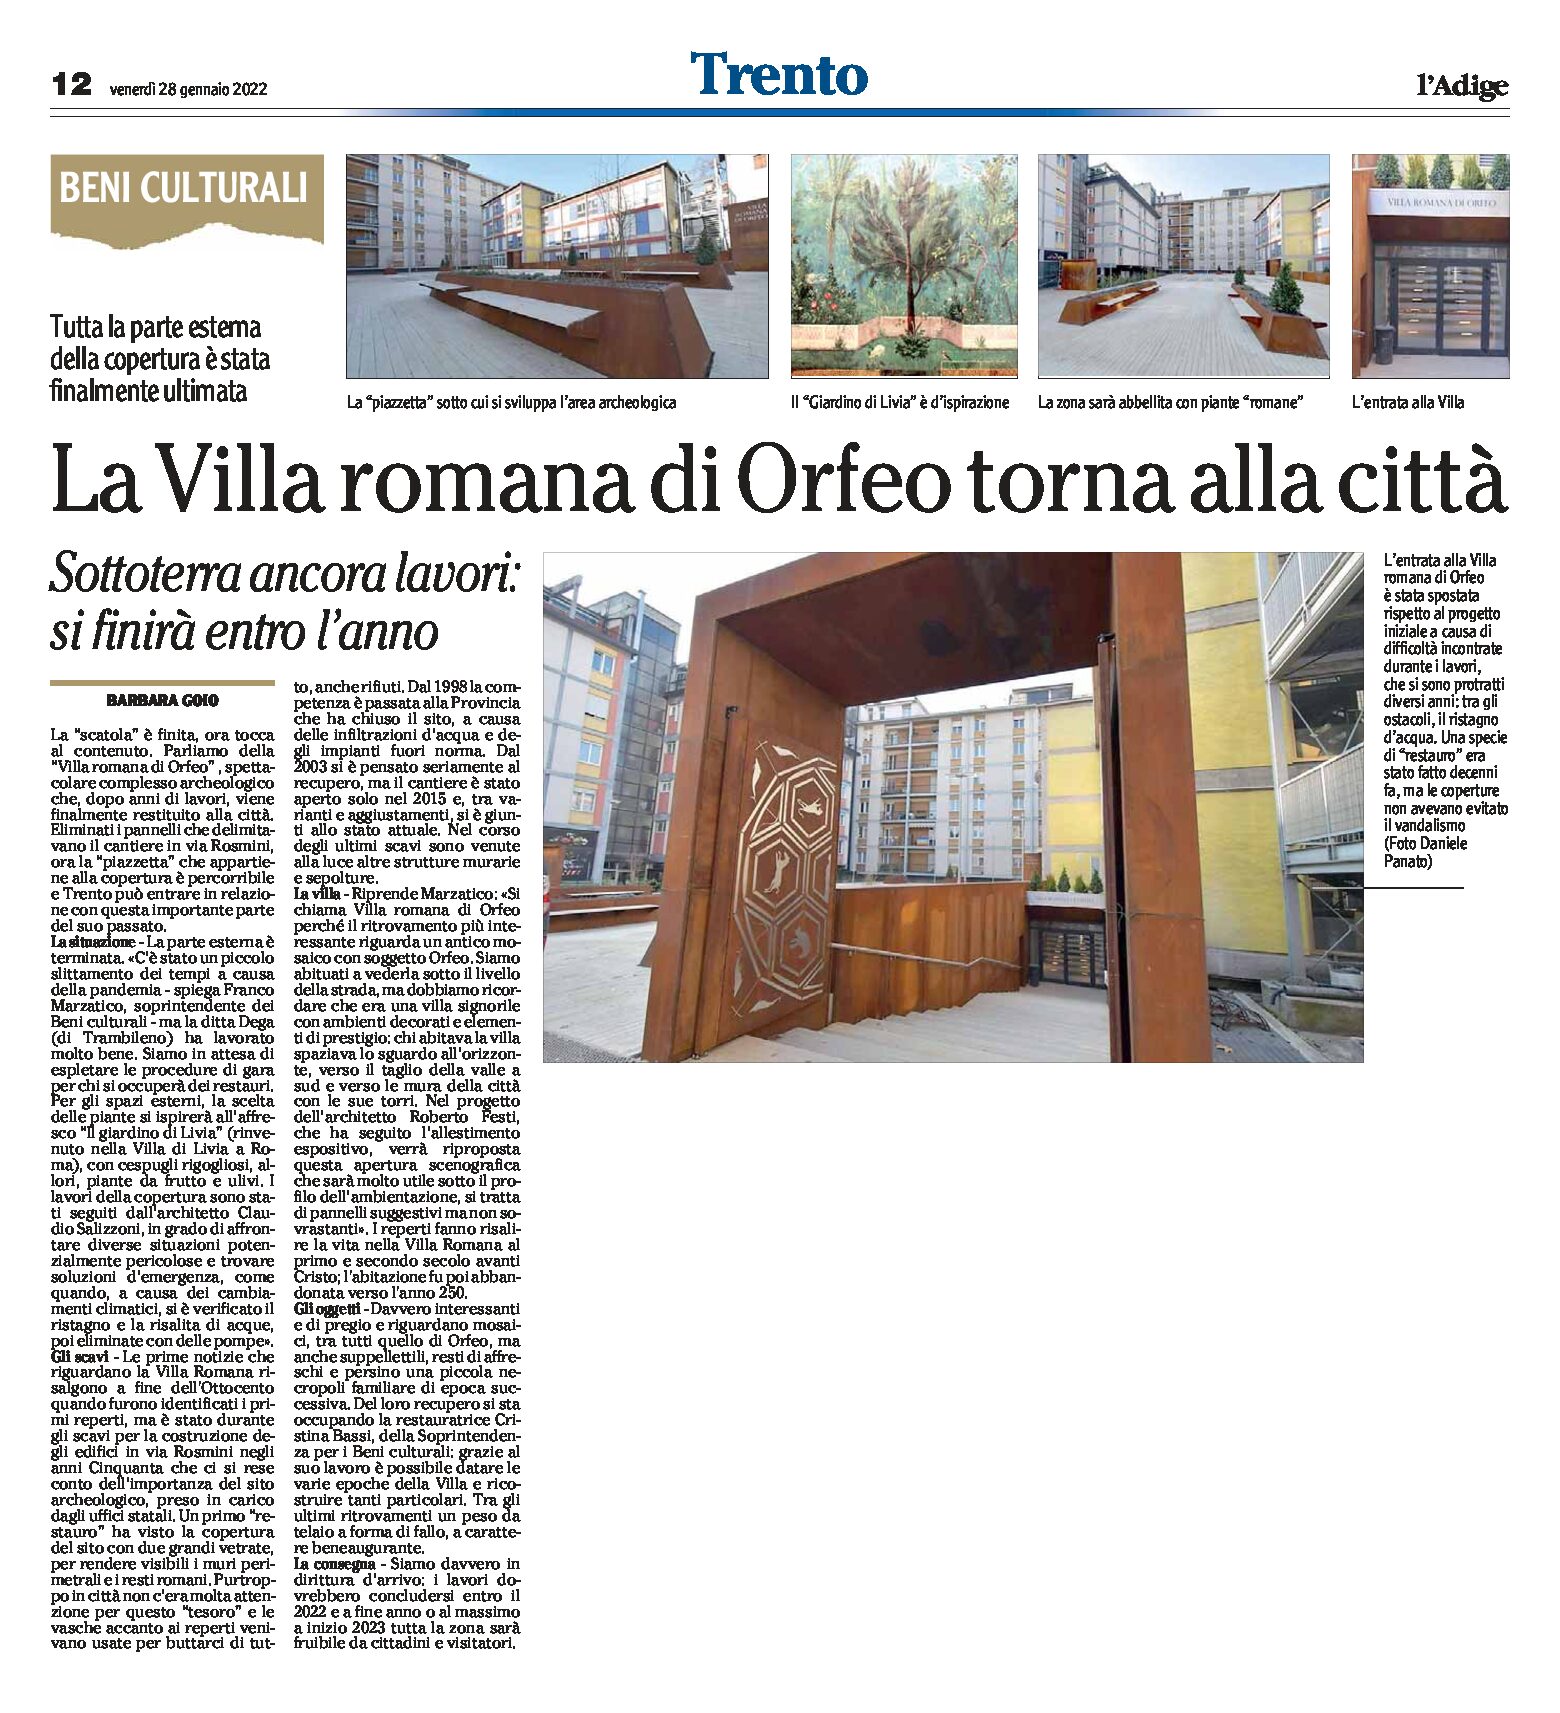 Trento: la Villa romana di Orfeo torna alla città. Si finirà entro l’anno